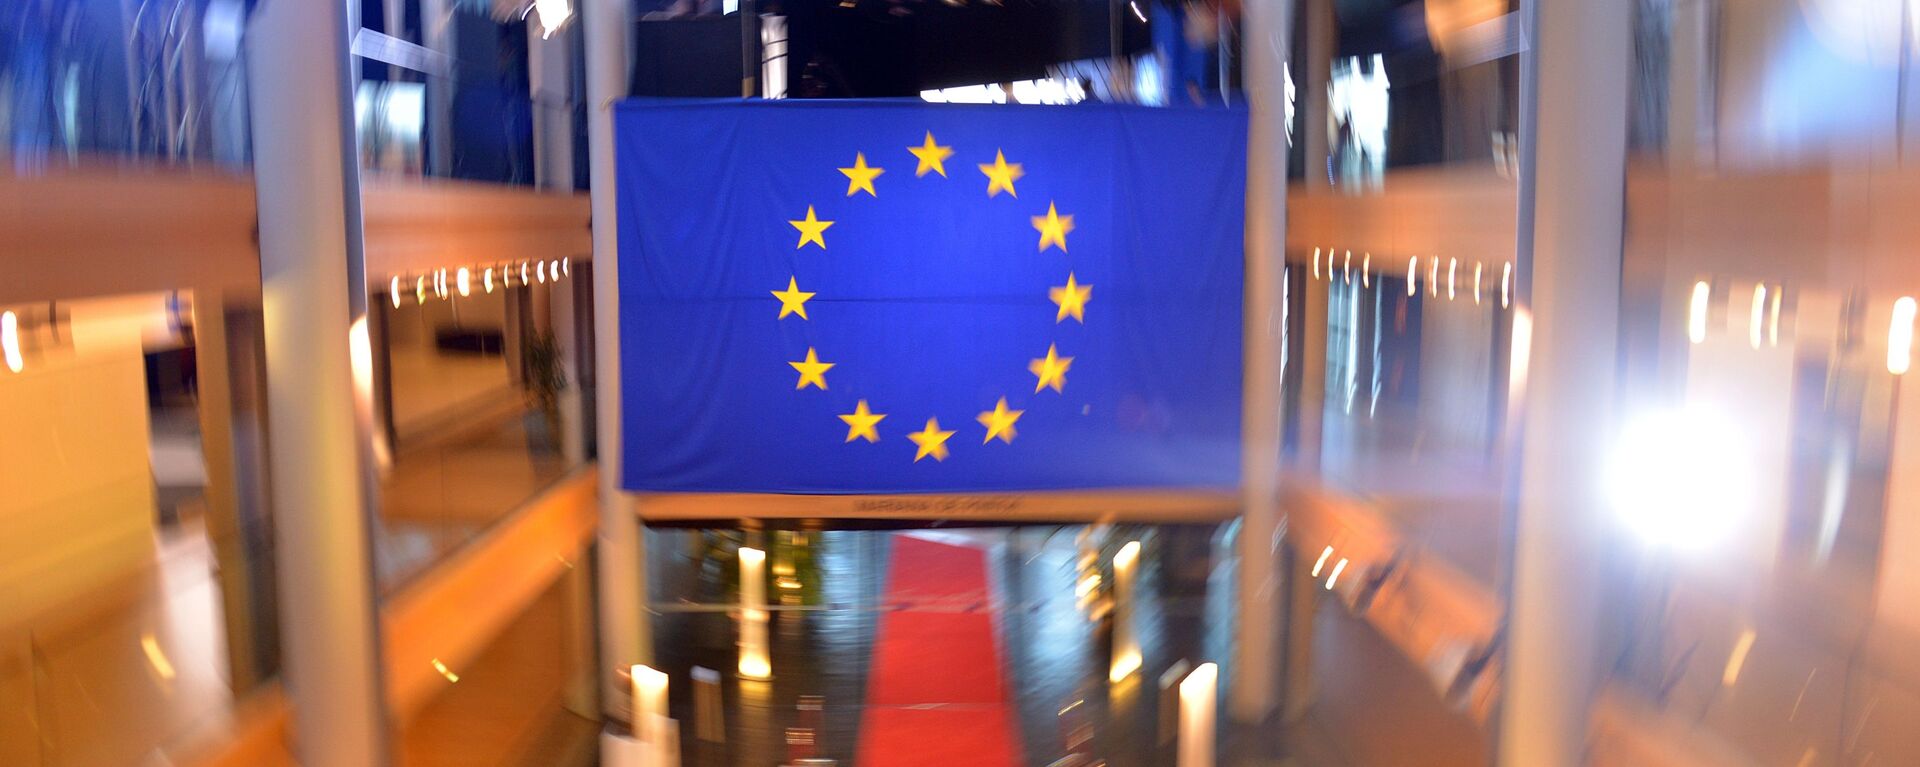 Флаг Евросоюза в главном здании Совета Европы в Страсбурге - Sputnik Латвия, 1920, 27.10.2021